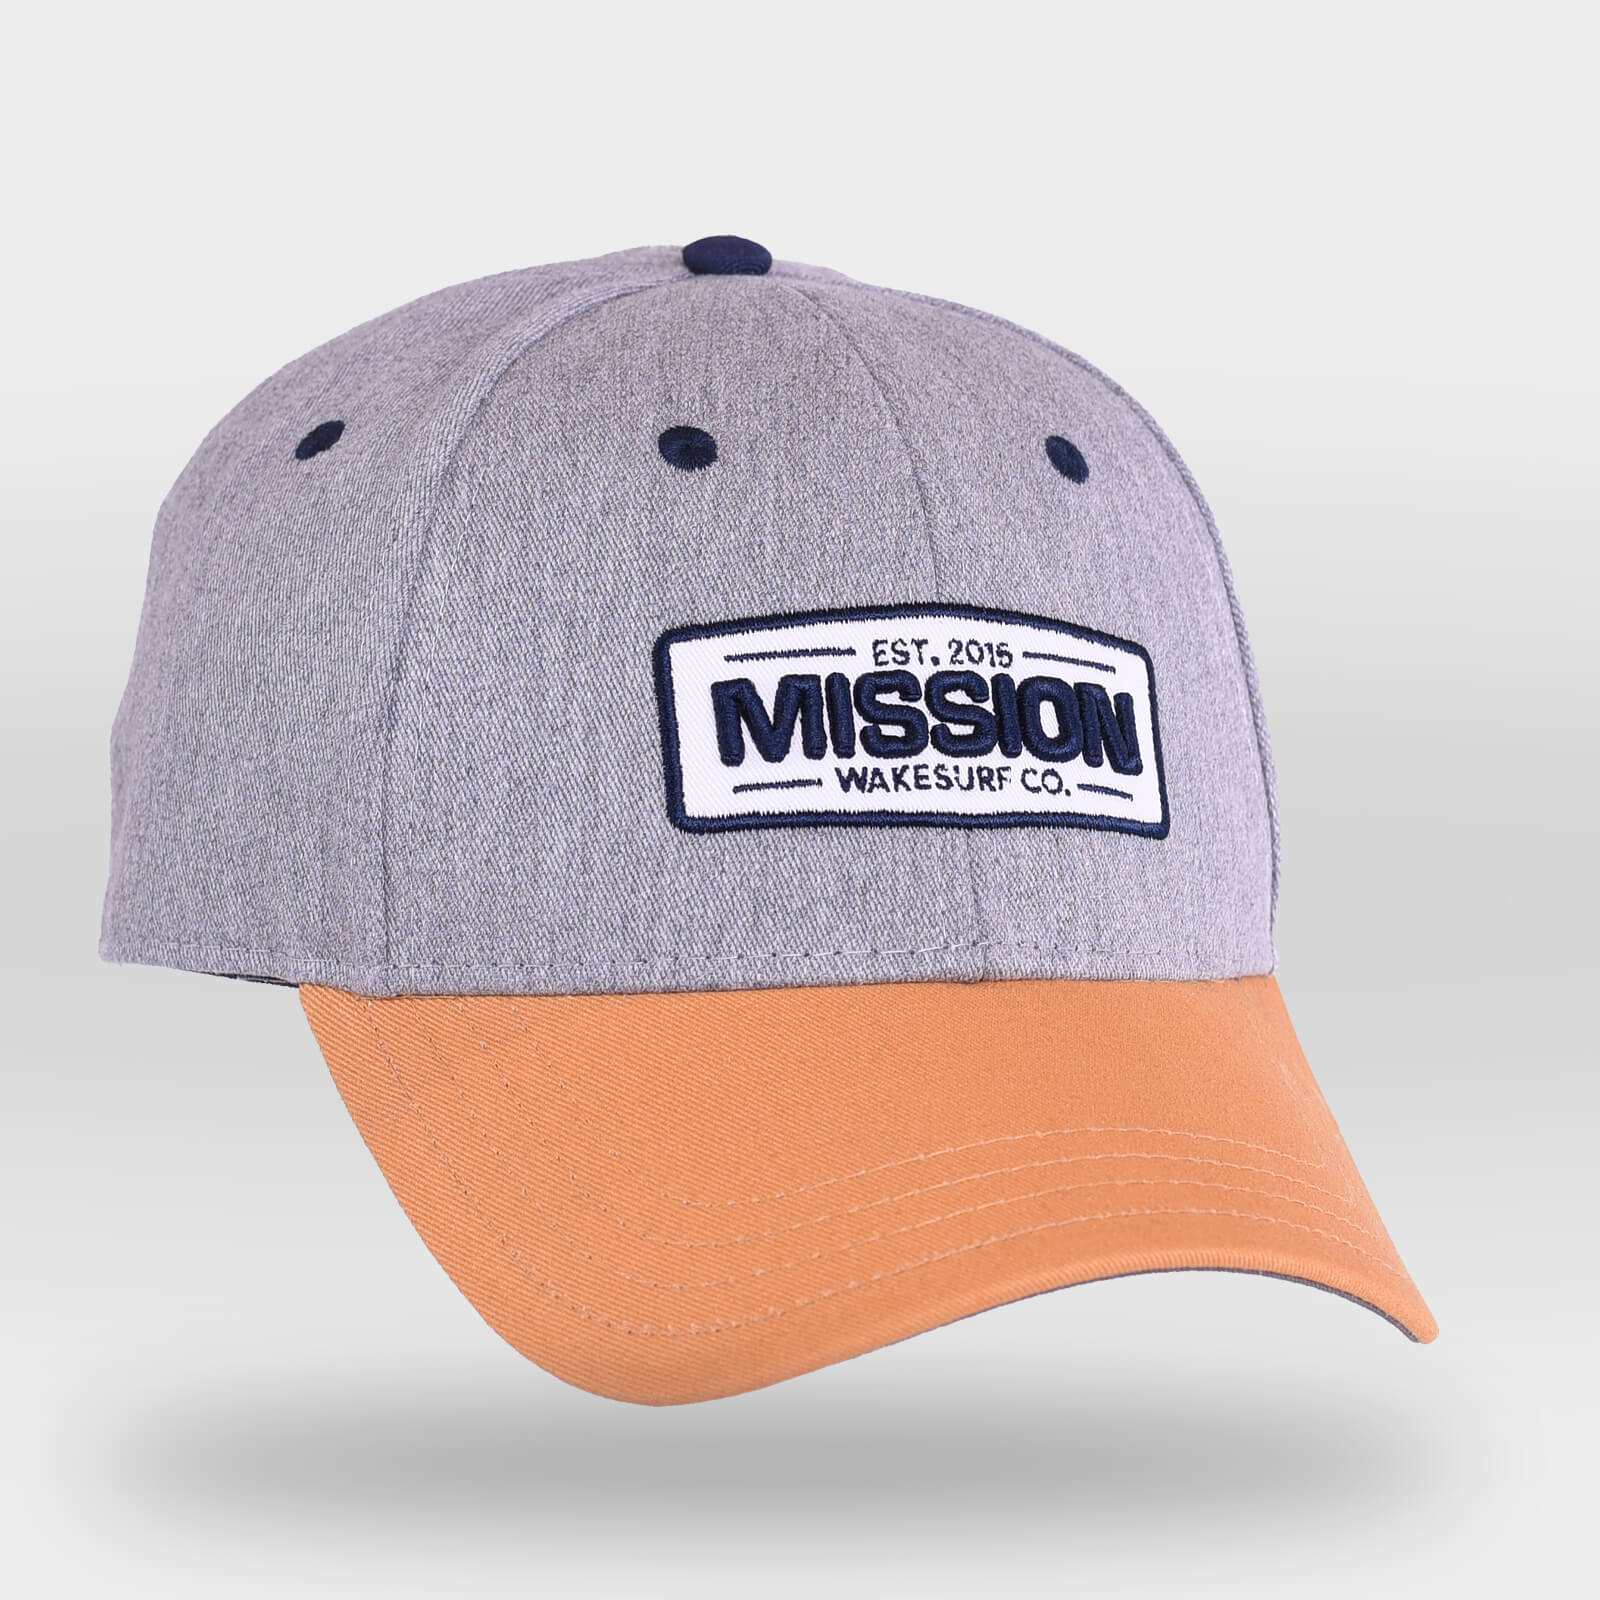 MISSION WakeSurf Co.